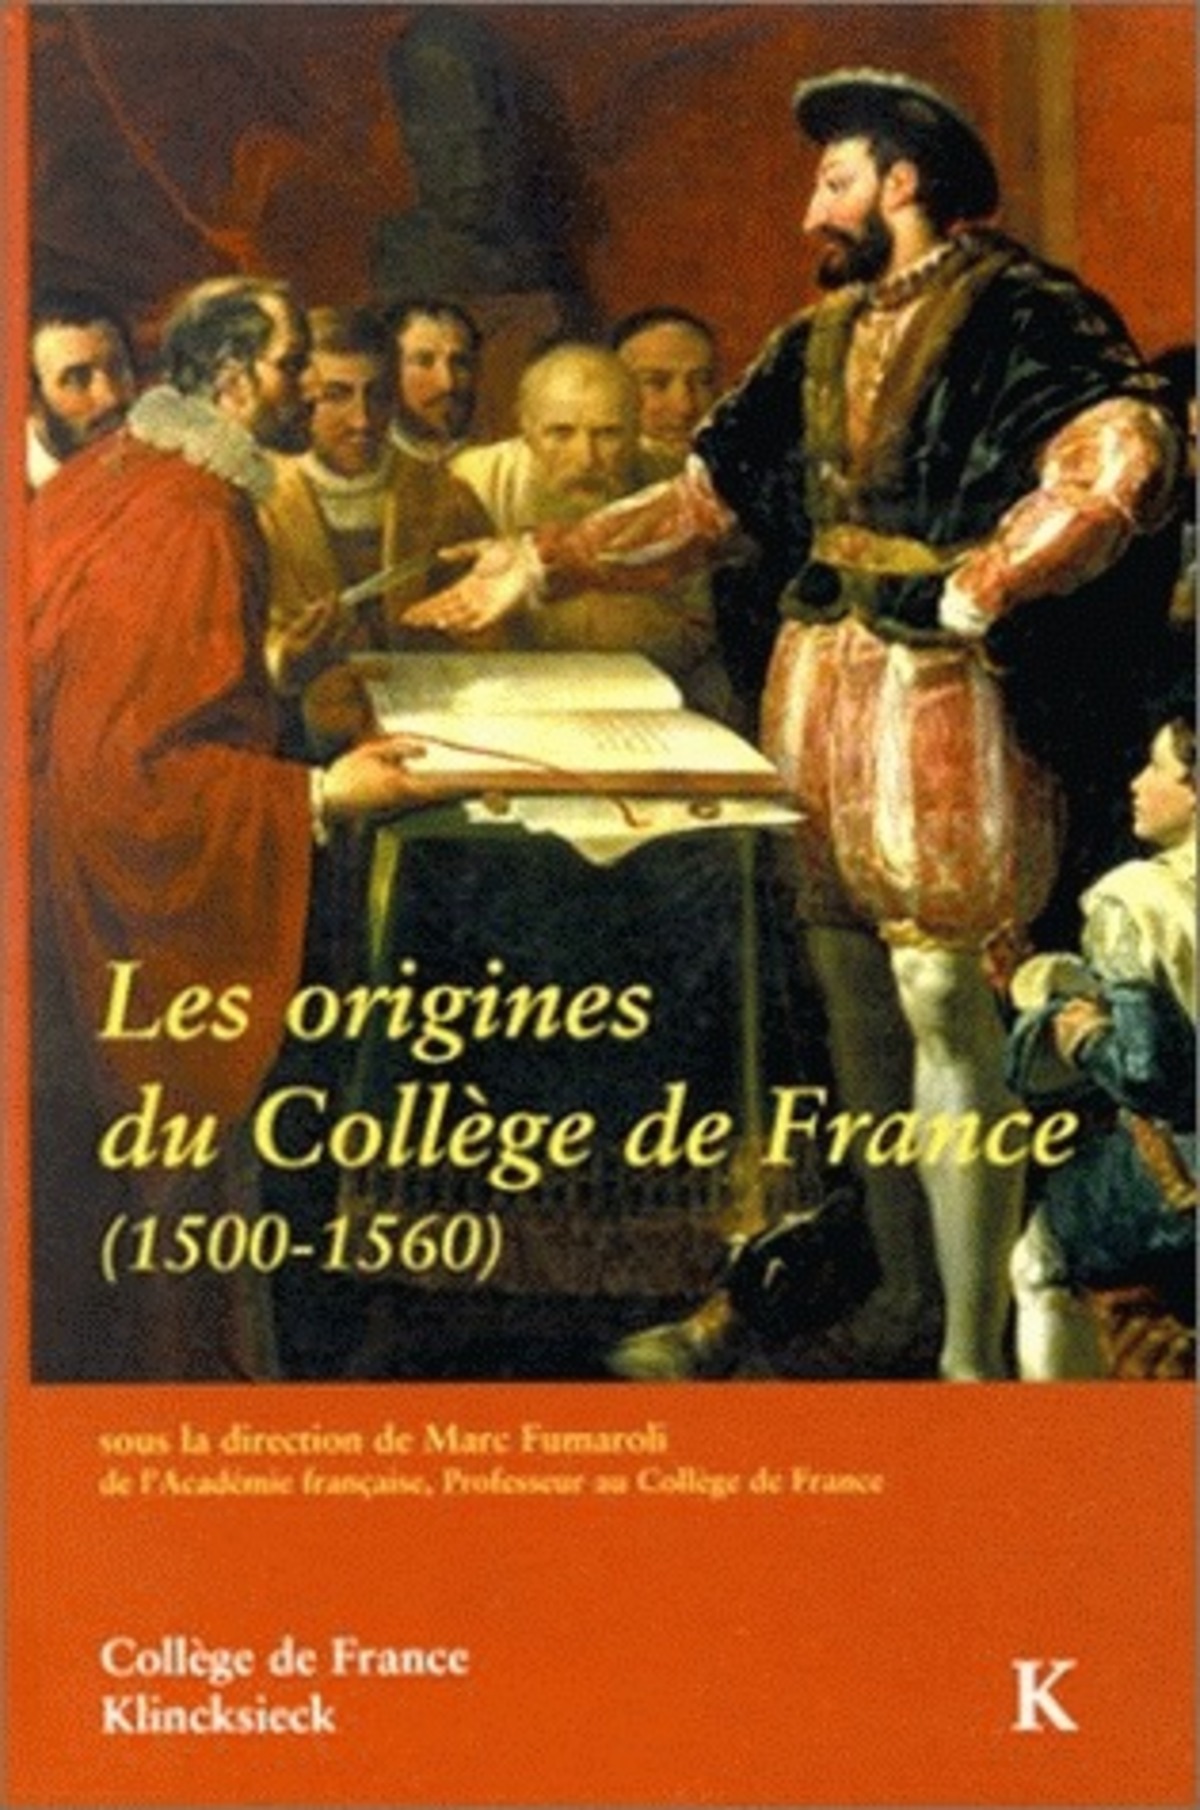 Les Origines du Collège de France (1500-1560)